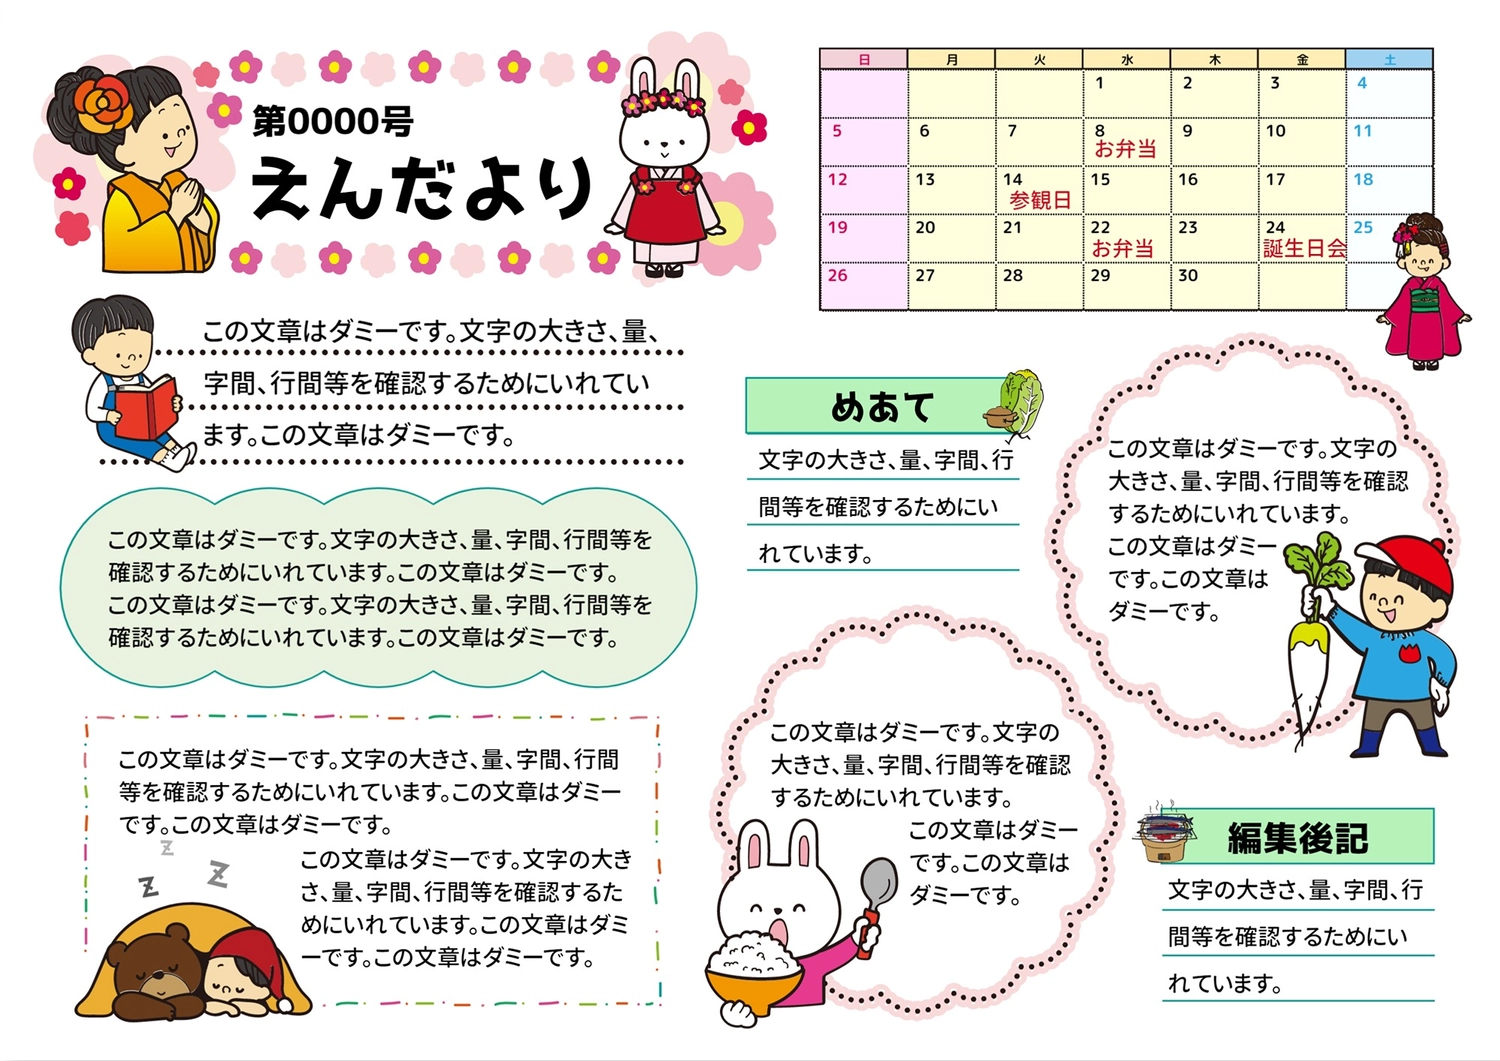 えんだより　着物の女の子, Japanese white radish, schedule, Editor&#39;s Note, News template